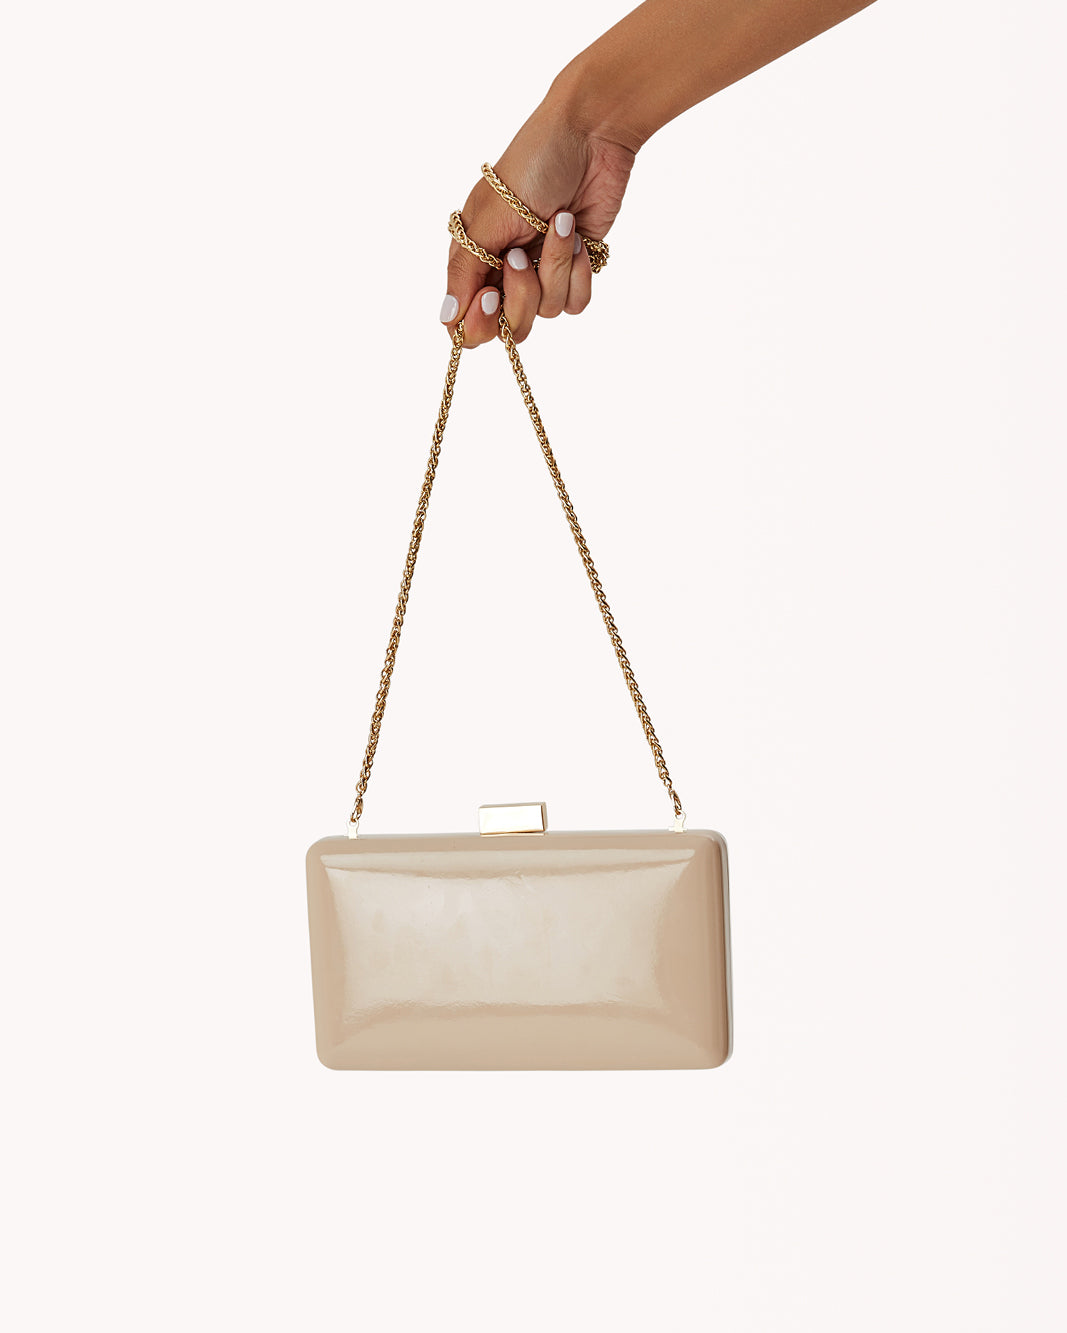 BROOKLYN CLUTCH BAG - NUDE PATENT-Handbags-Billini-O/S-Billini